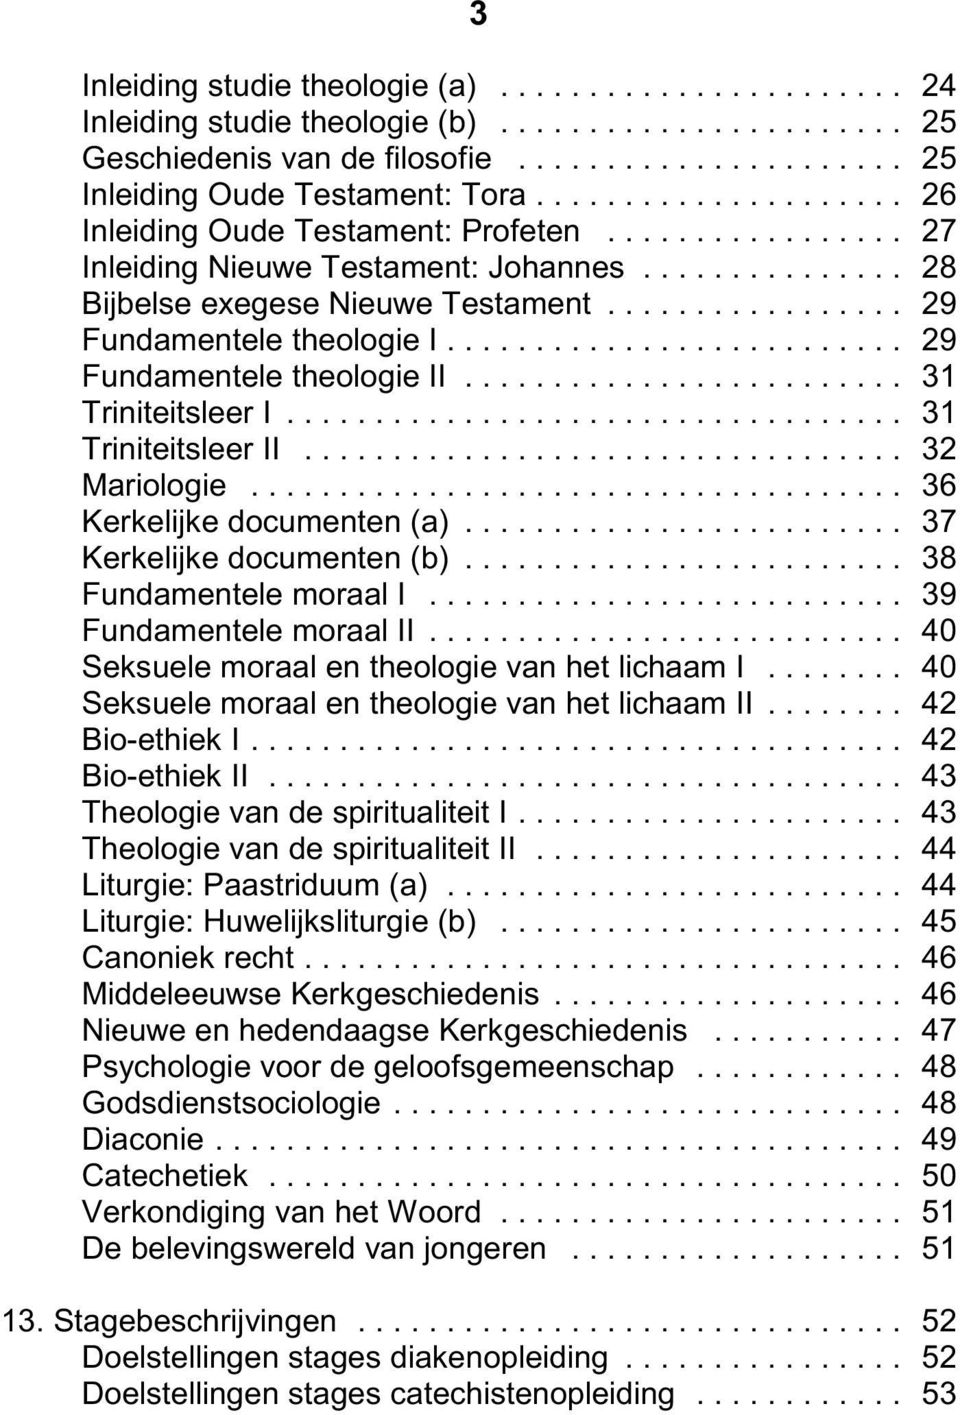 .. 29 Fundamentele theologie II... 31 Triniteitsleer I... 31 Triniteitsleer II... 32 Mariologie... 36 Kerkelijke documenten (a)... 37 Kerkelijke documenten (b)... 38 Fundamentele moraal I.